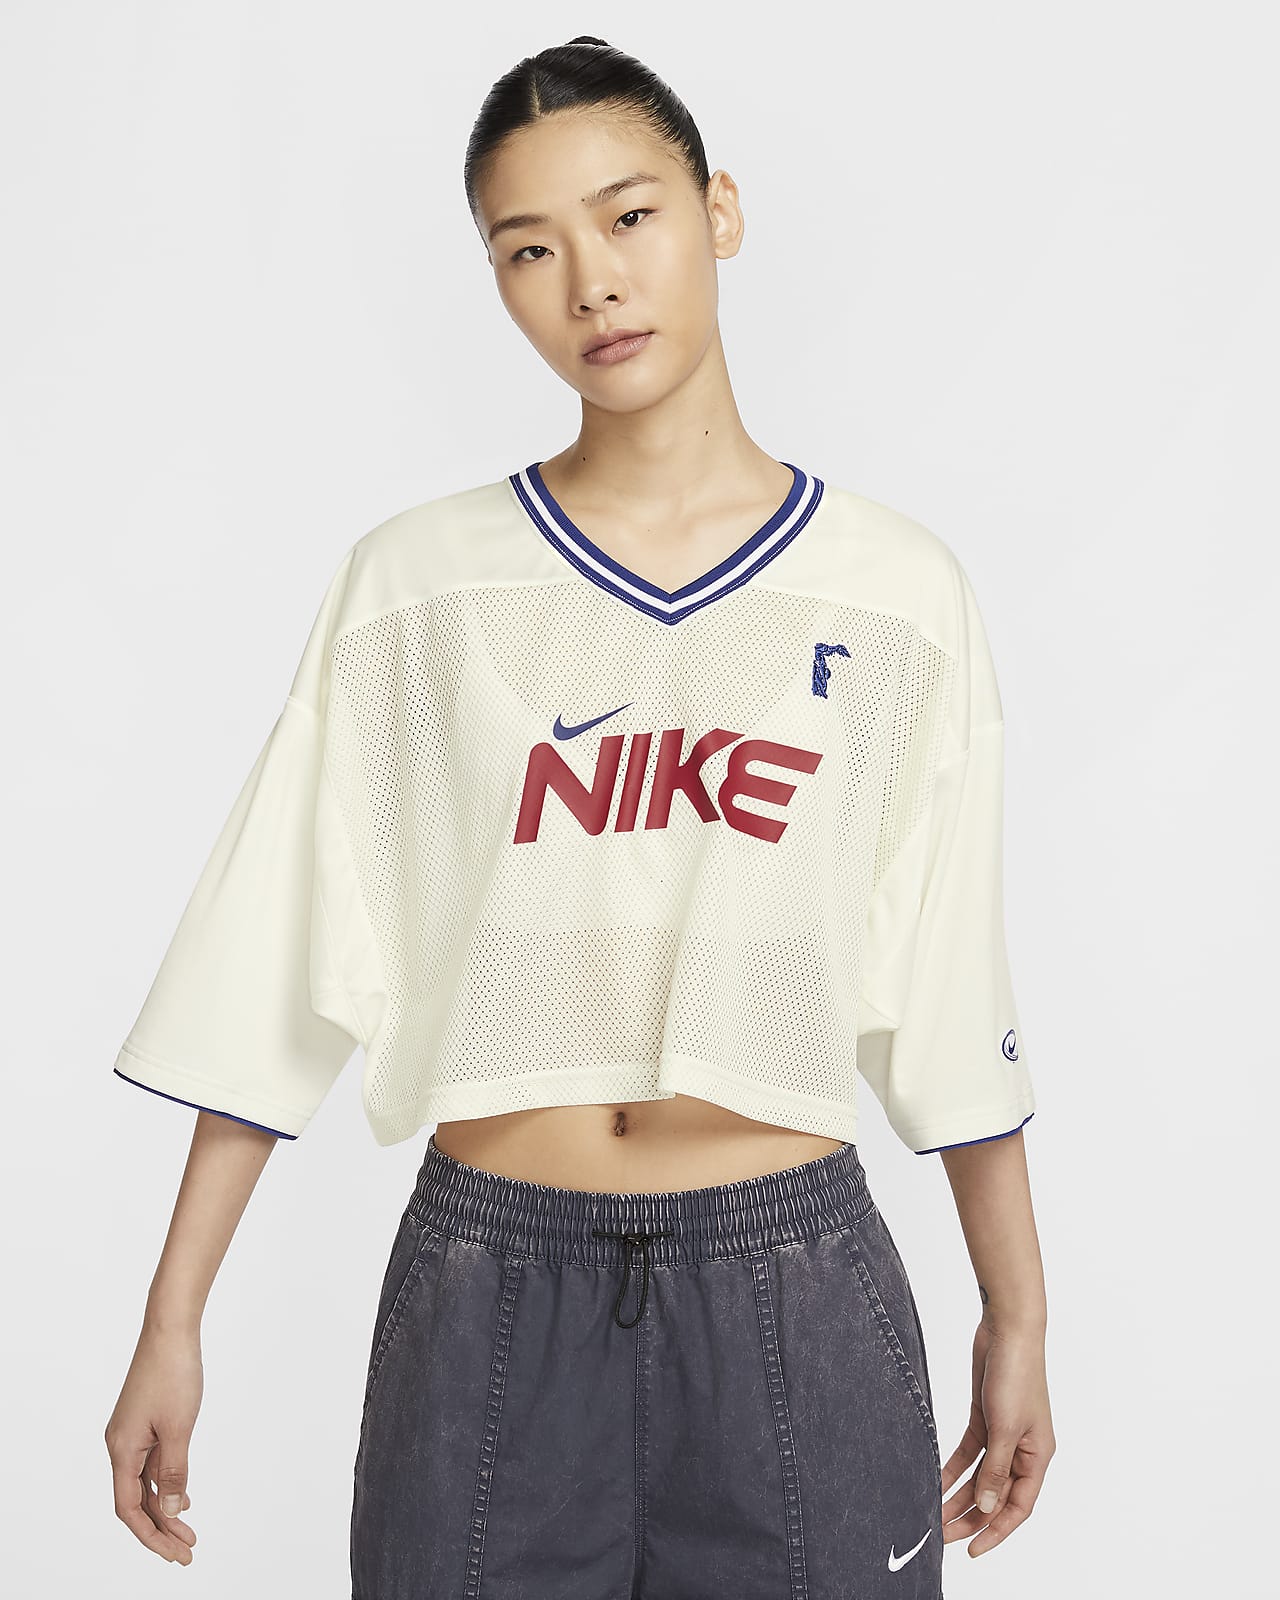 Nike Sportswear KYOKA 同款女子短袖上衣